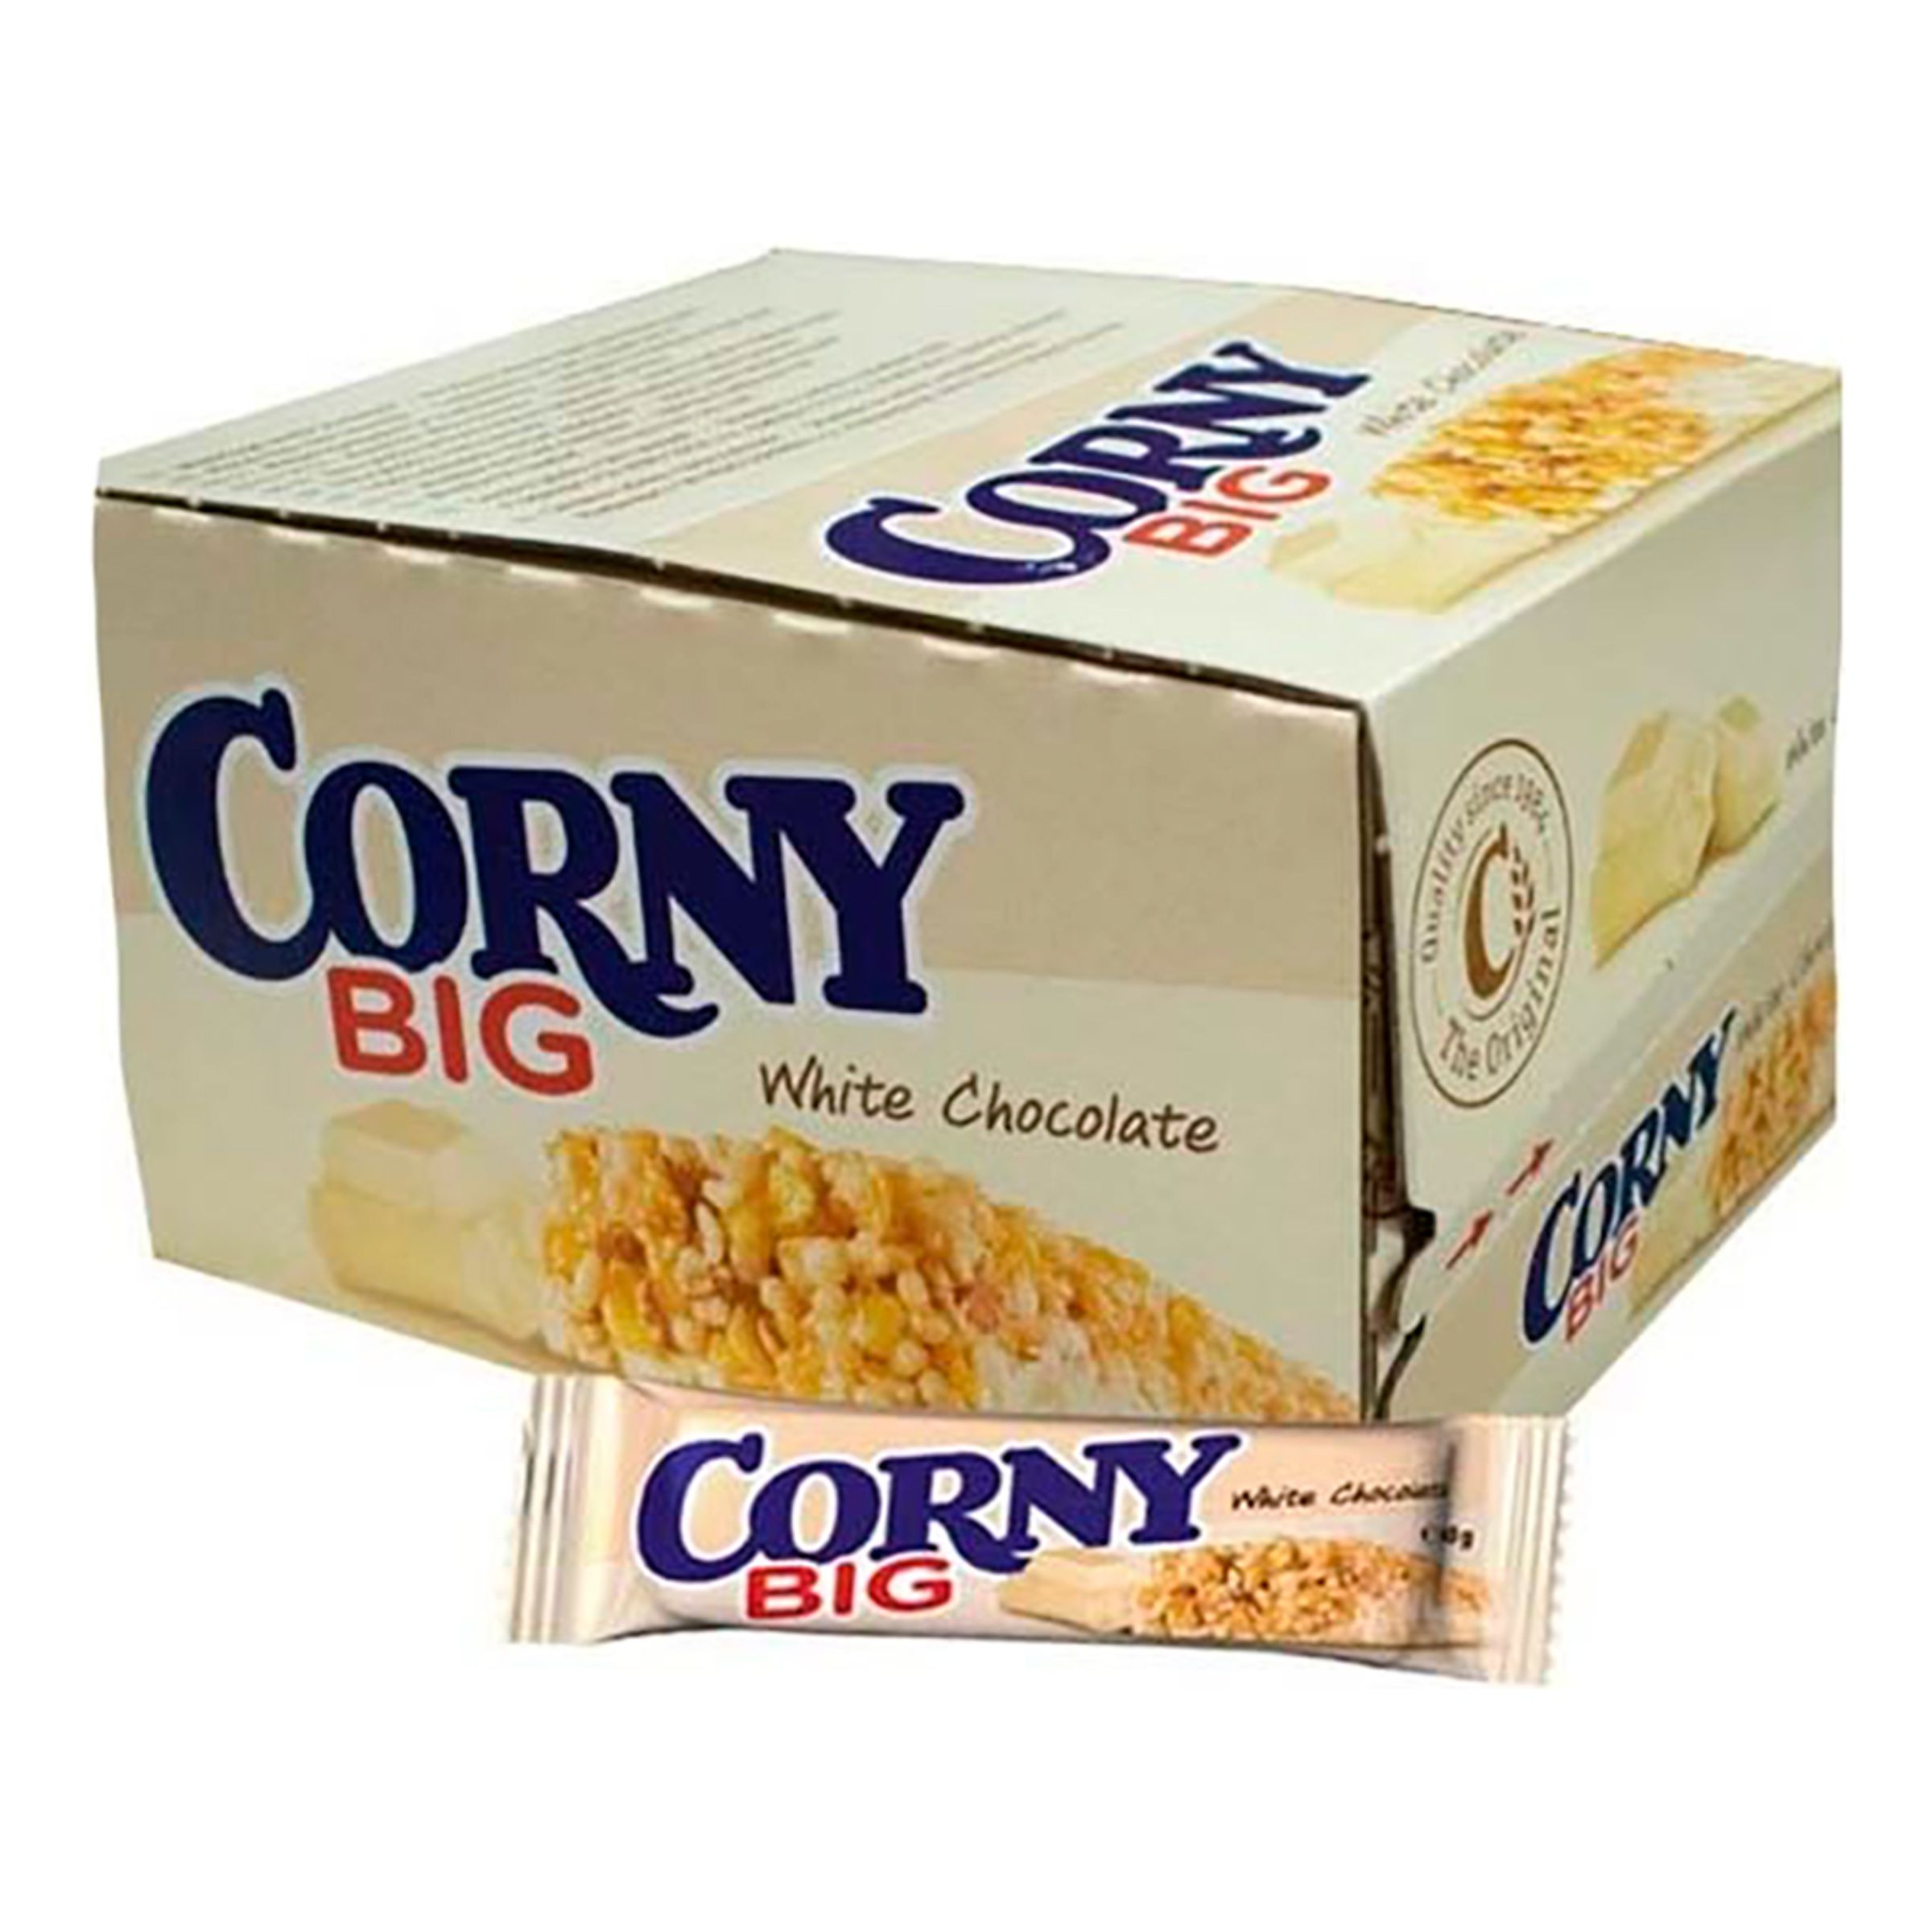 Corny Big White Chocolate - 24-pack